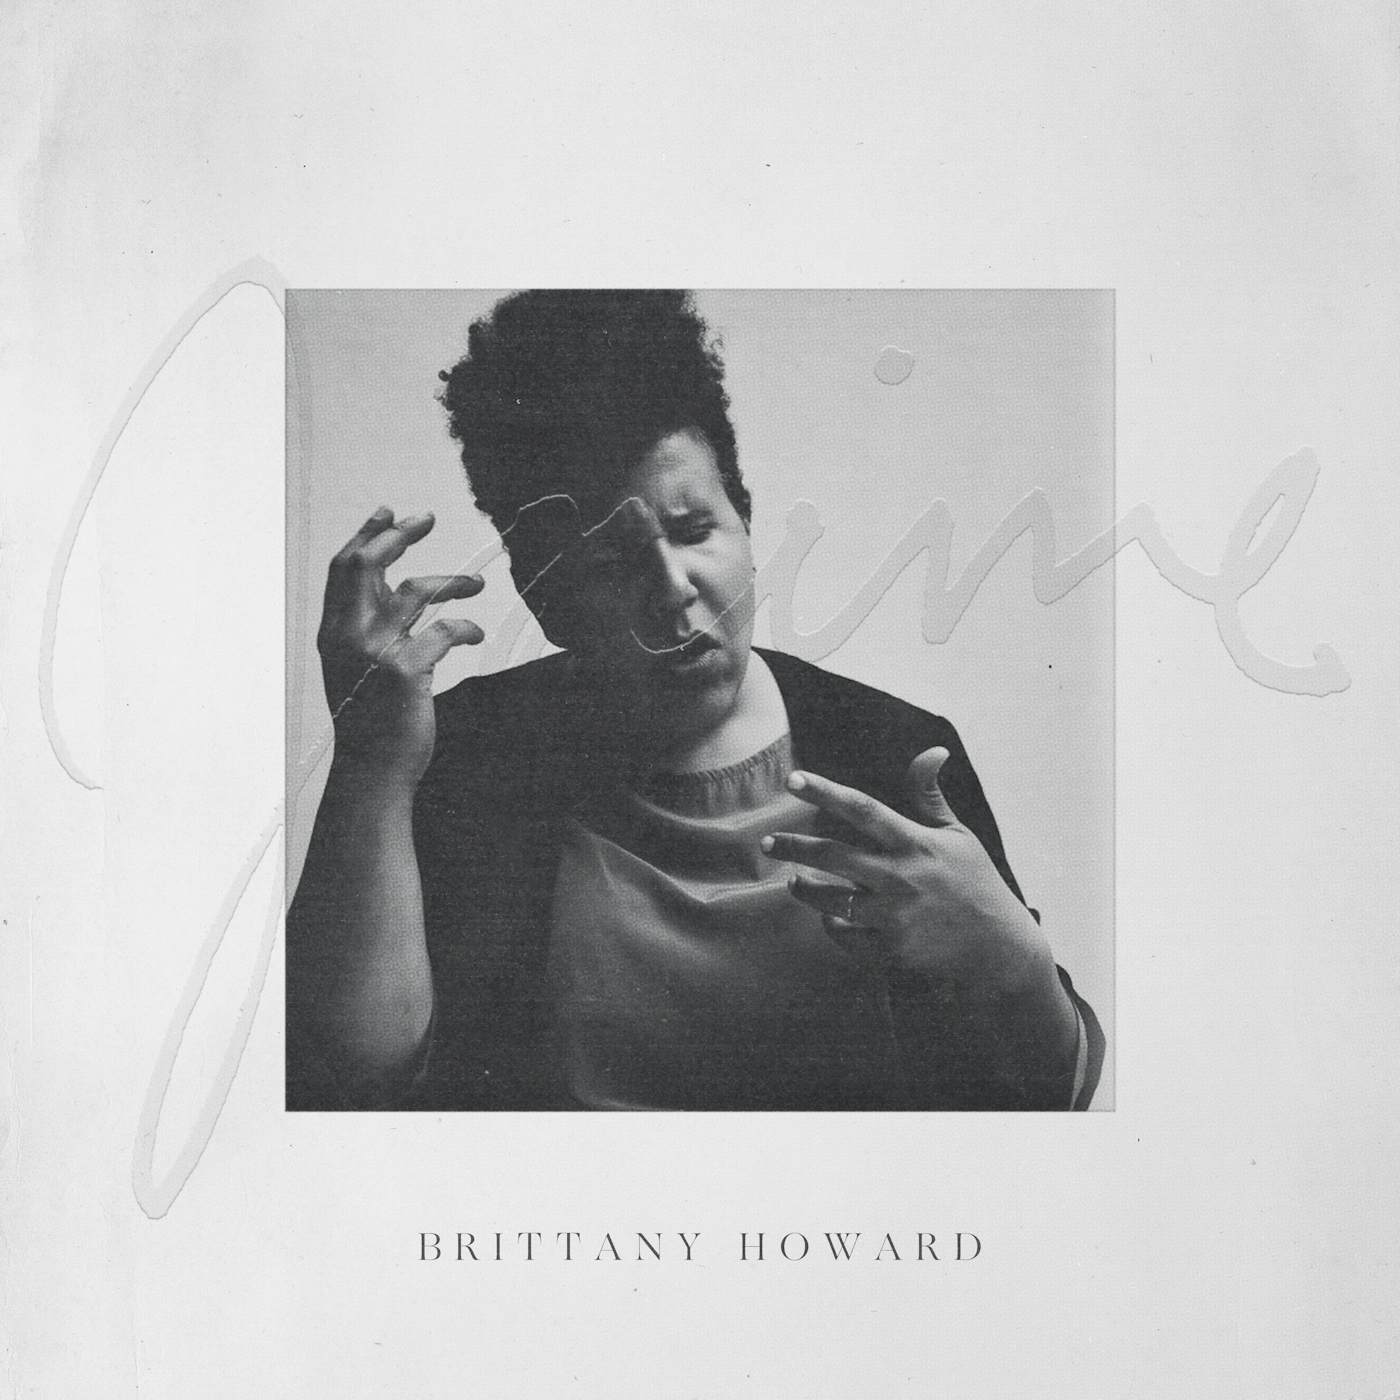 Brittany Howard Jaime Vinyl Record